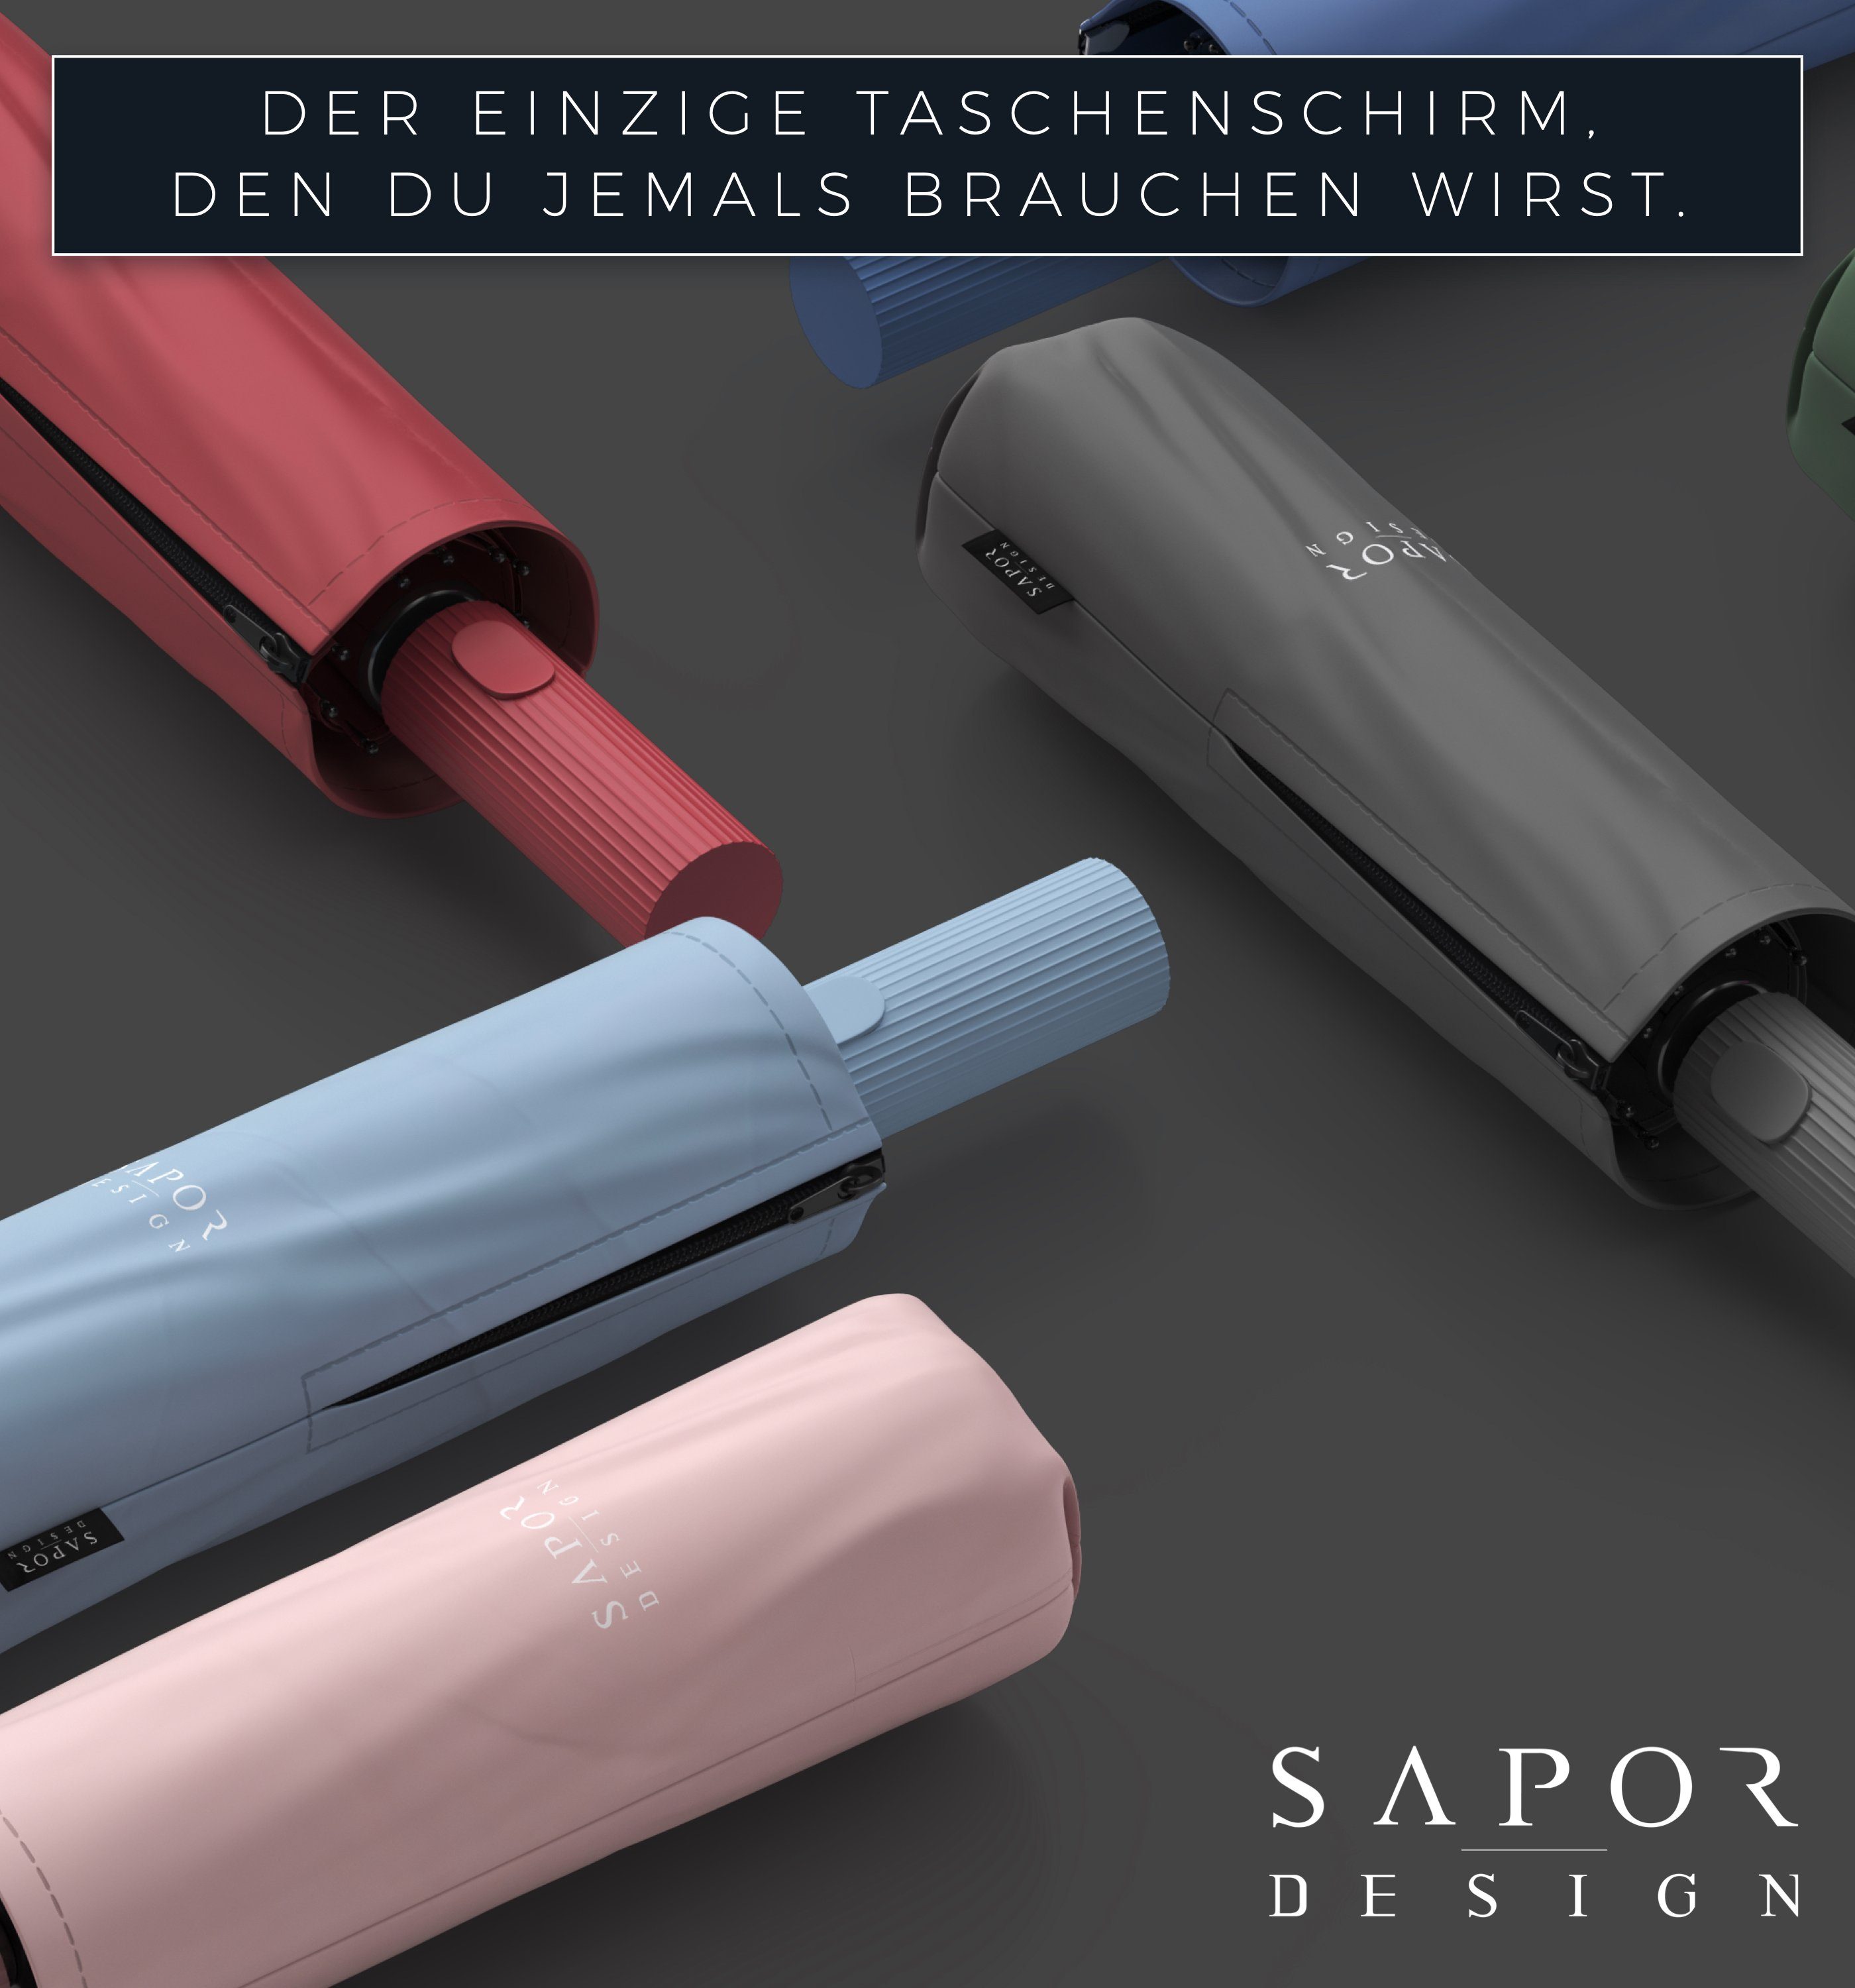 Sapor Design Taschenregenschirm Sapor Schwarz ICONIC Design Taschenschirm